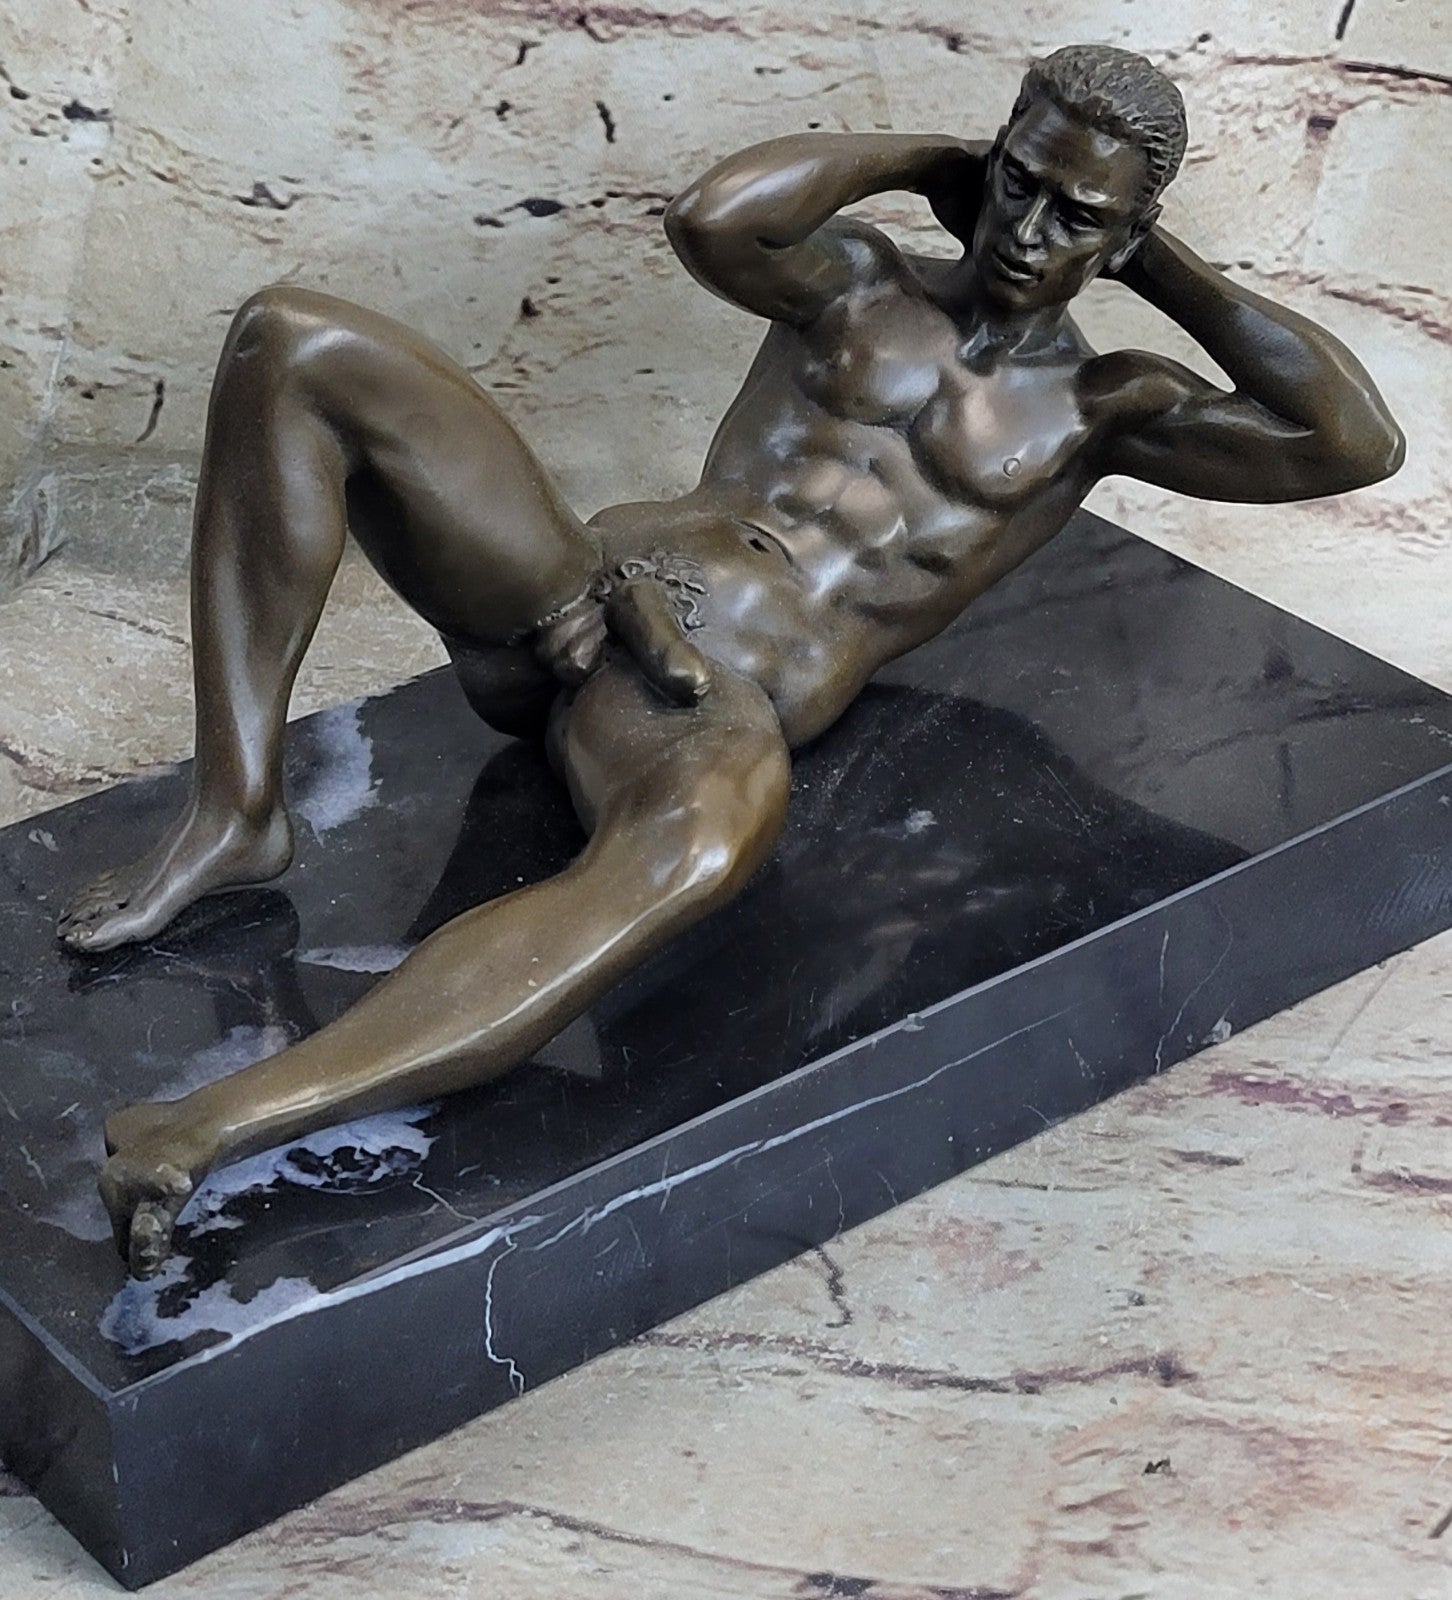 Nude Bronze Sculpture Hot Cast Museum Quality Figurine Figure Decor Lost Wax